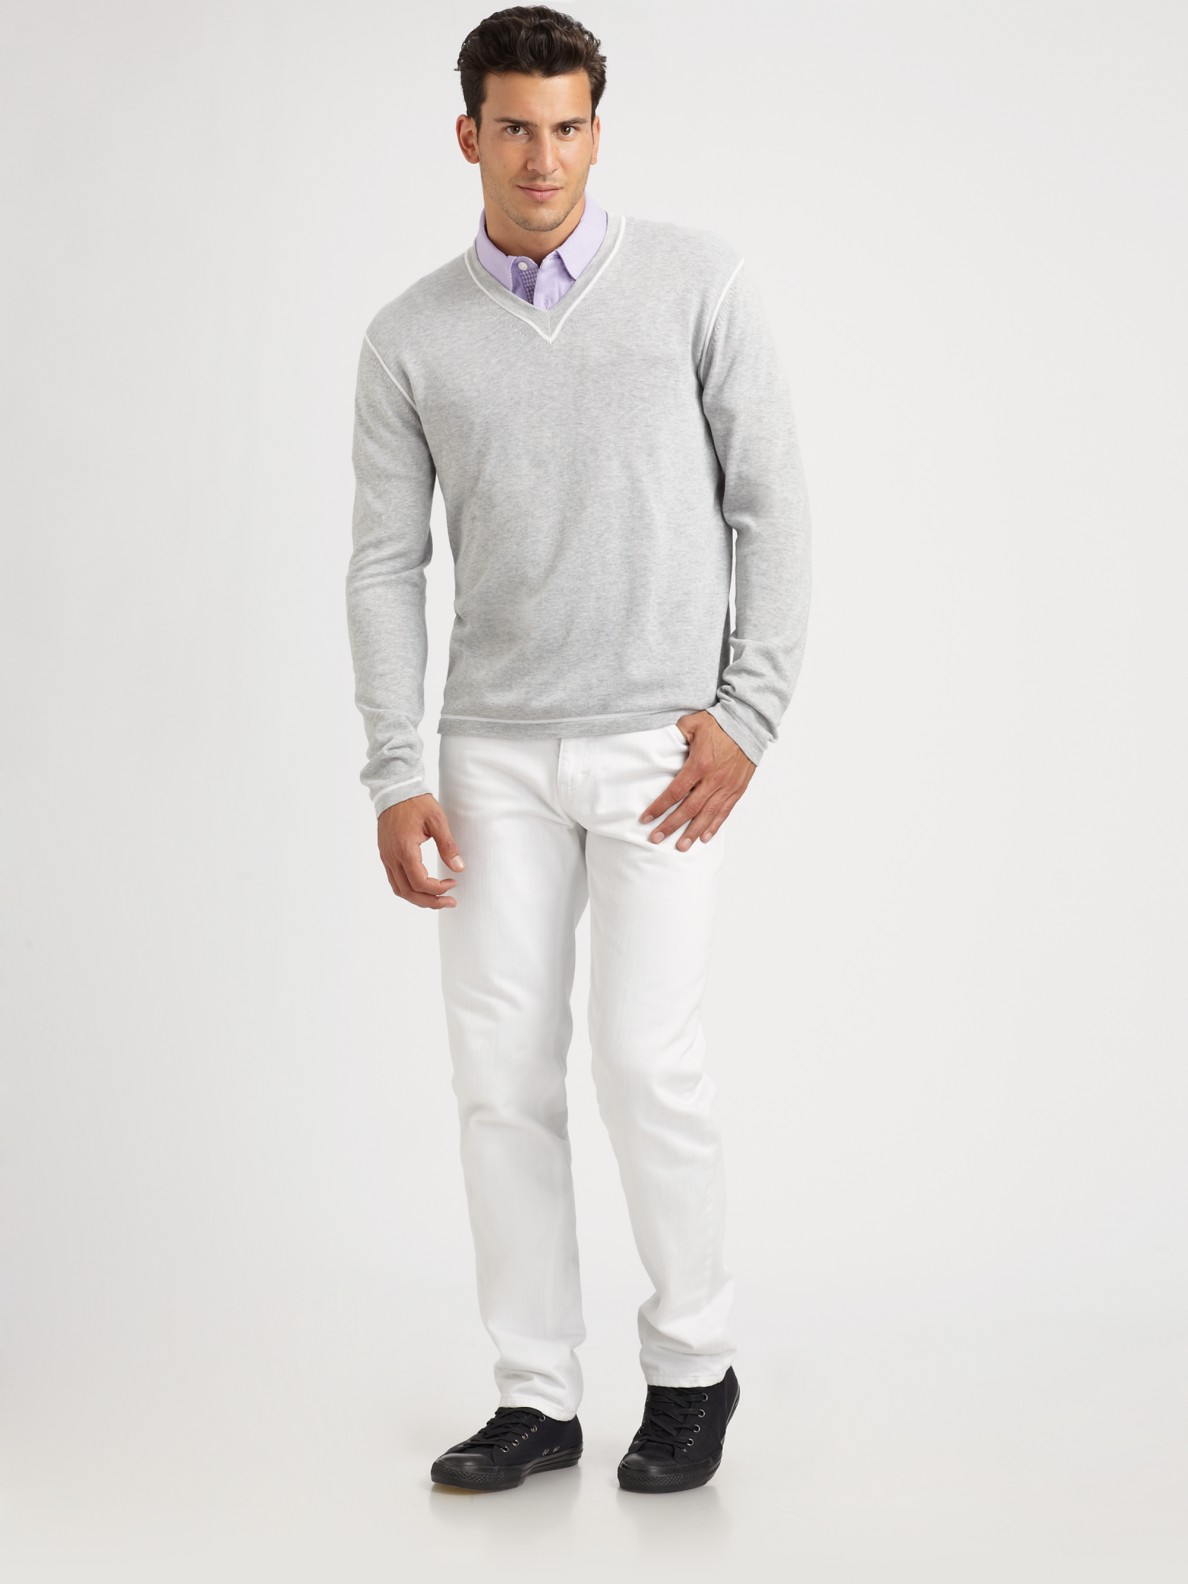 Michael Kors V-neck Sweater in Gray for Men (grey)